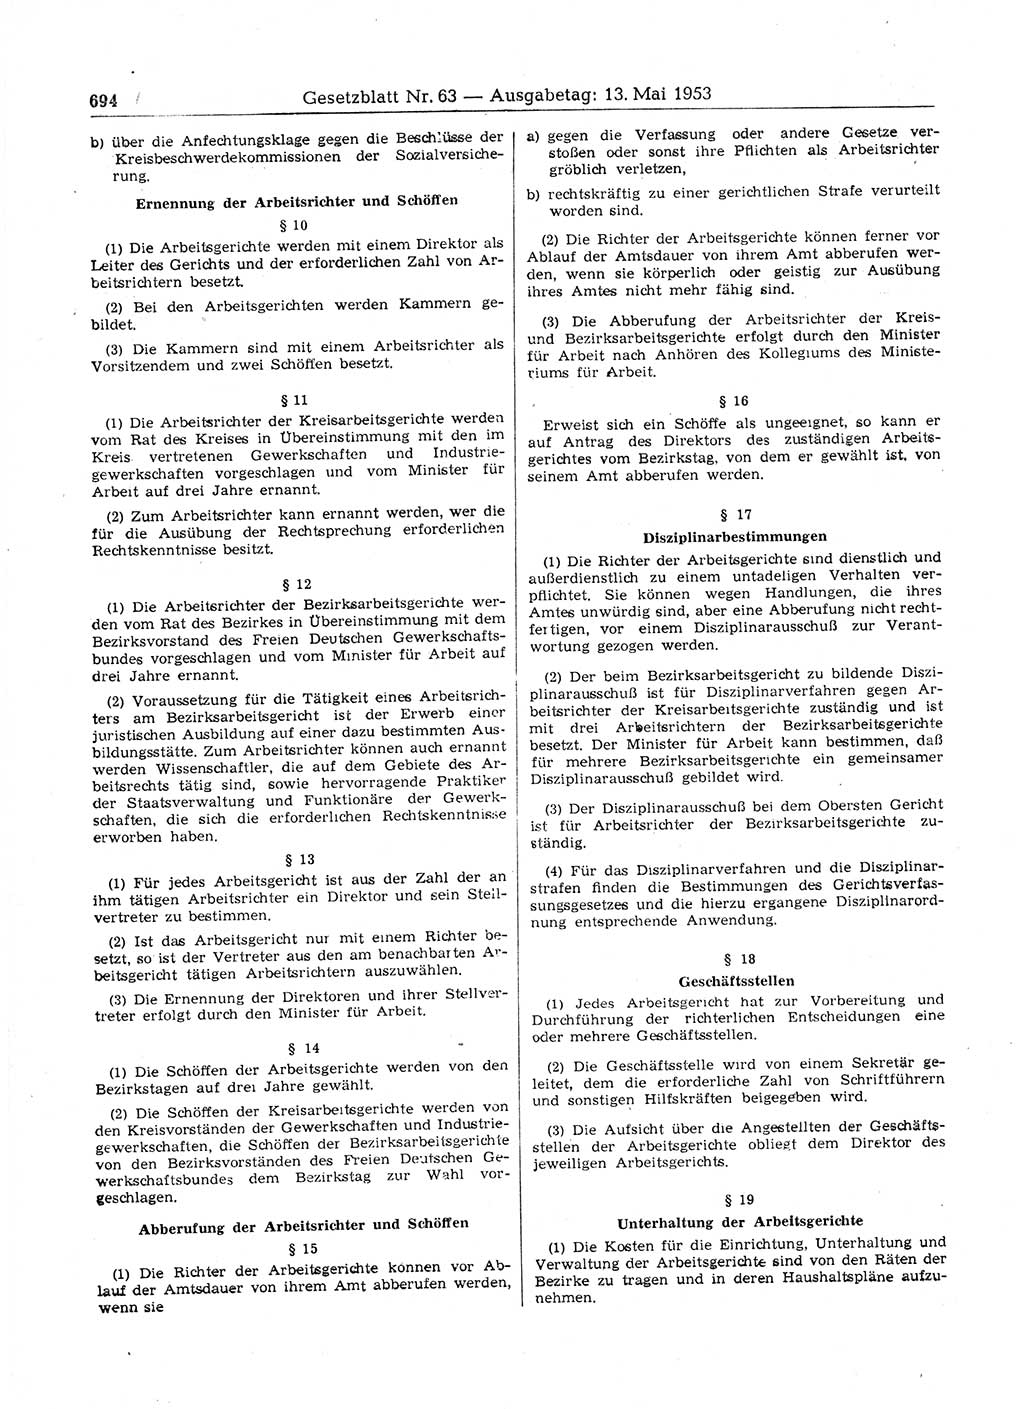 Gesetzblatt (GBl.) der Deutschen Demokratischen Republik (DDR) 1953, Seite 694 (GBl. DDR 1953, S. 694)